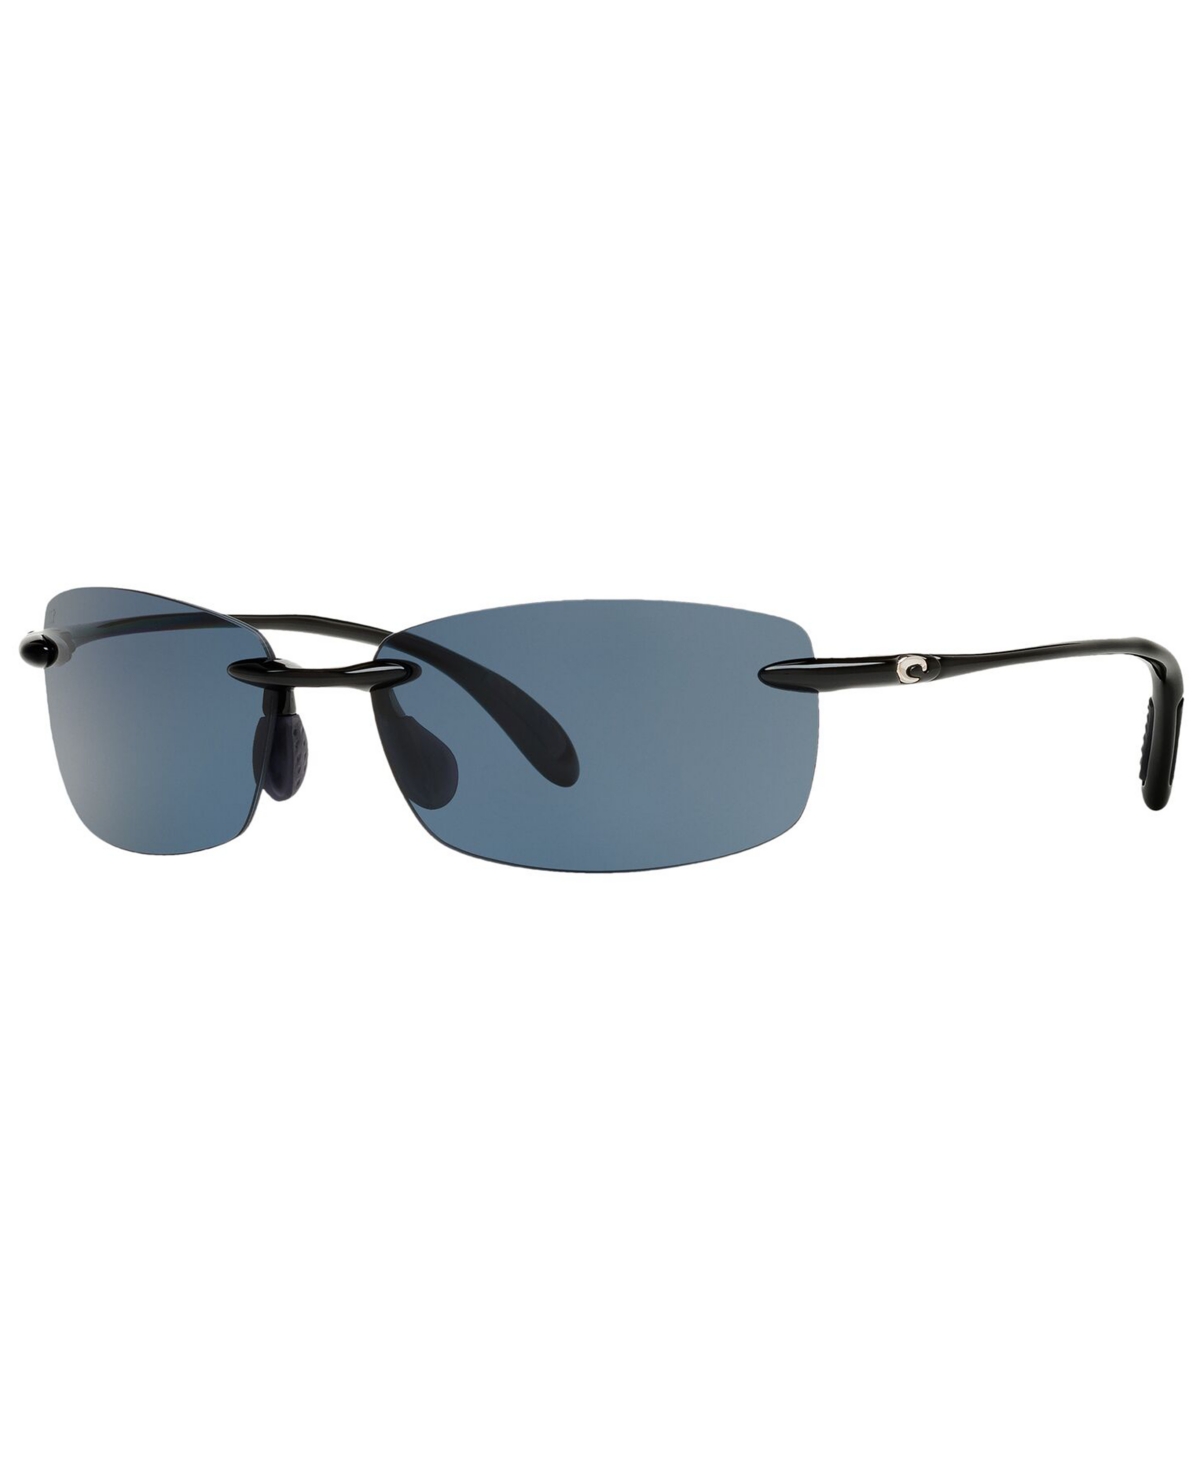 Unisex Polarized Sunglasses, 6S000121 - BLACK SHINY/GREY